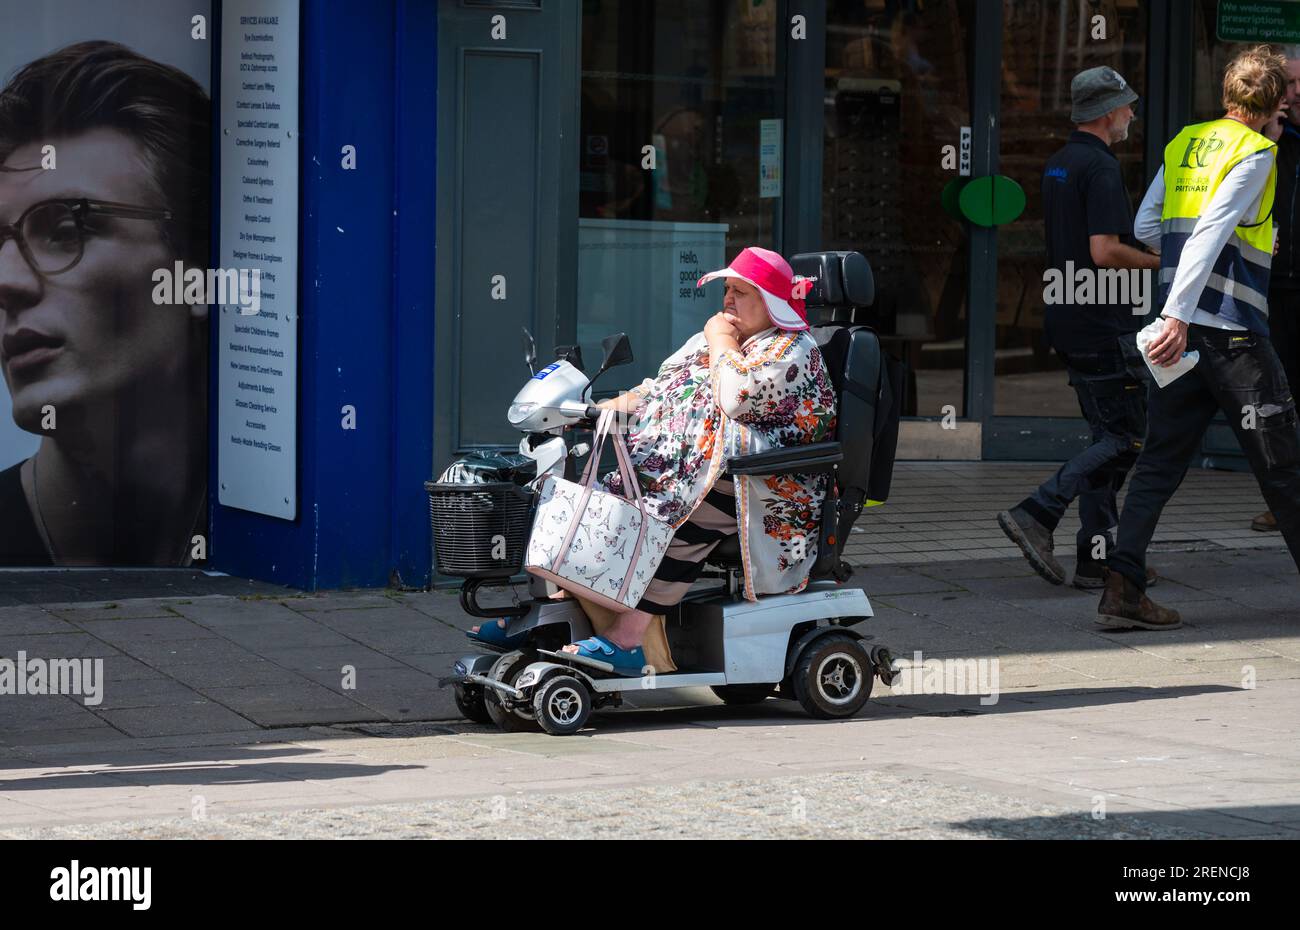 Donna anziana di grandi dimensioni in scooter elettrico per la mobilità sul marciapiede dei negozi, che porta borse per la spesa, indossa abiti estivi e cappello in una città in Inghilterra, Regno Unito. Foto Stock